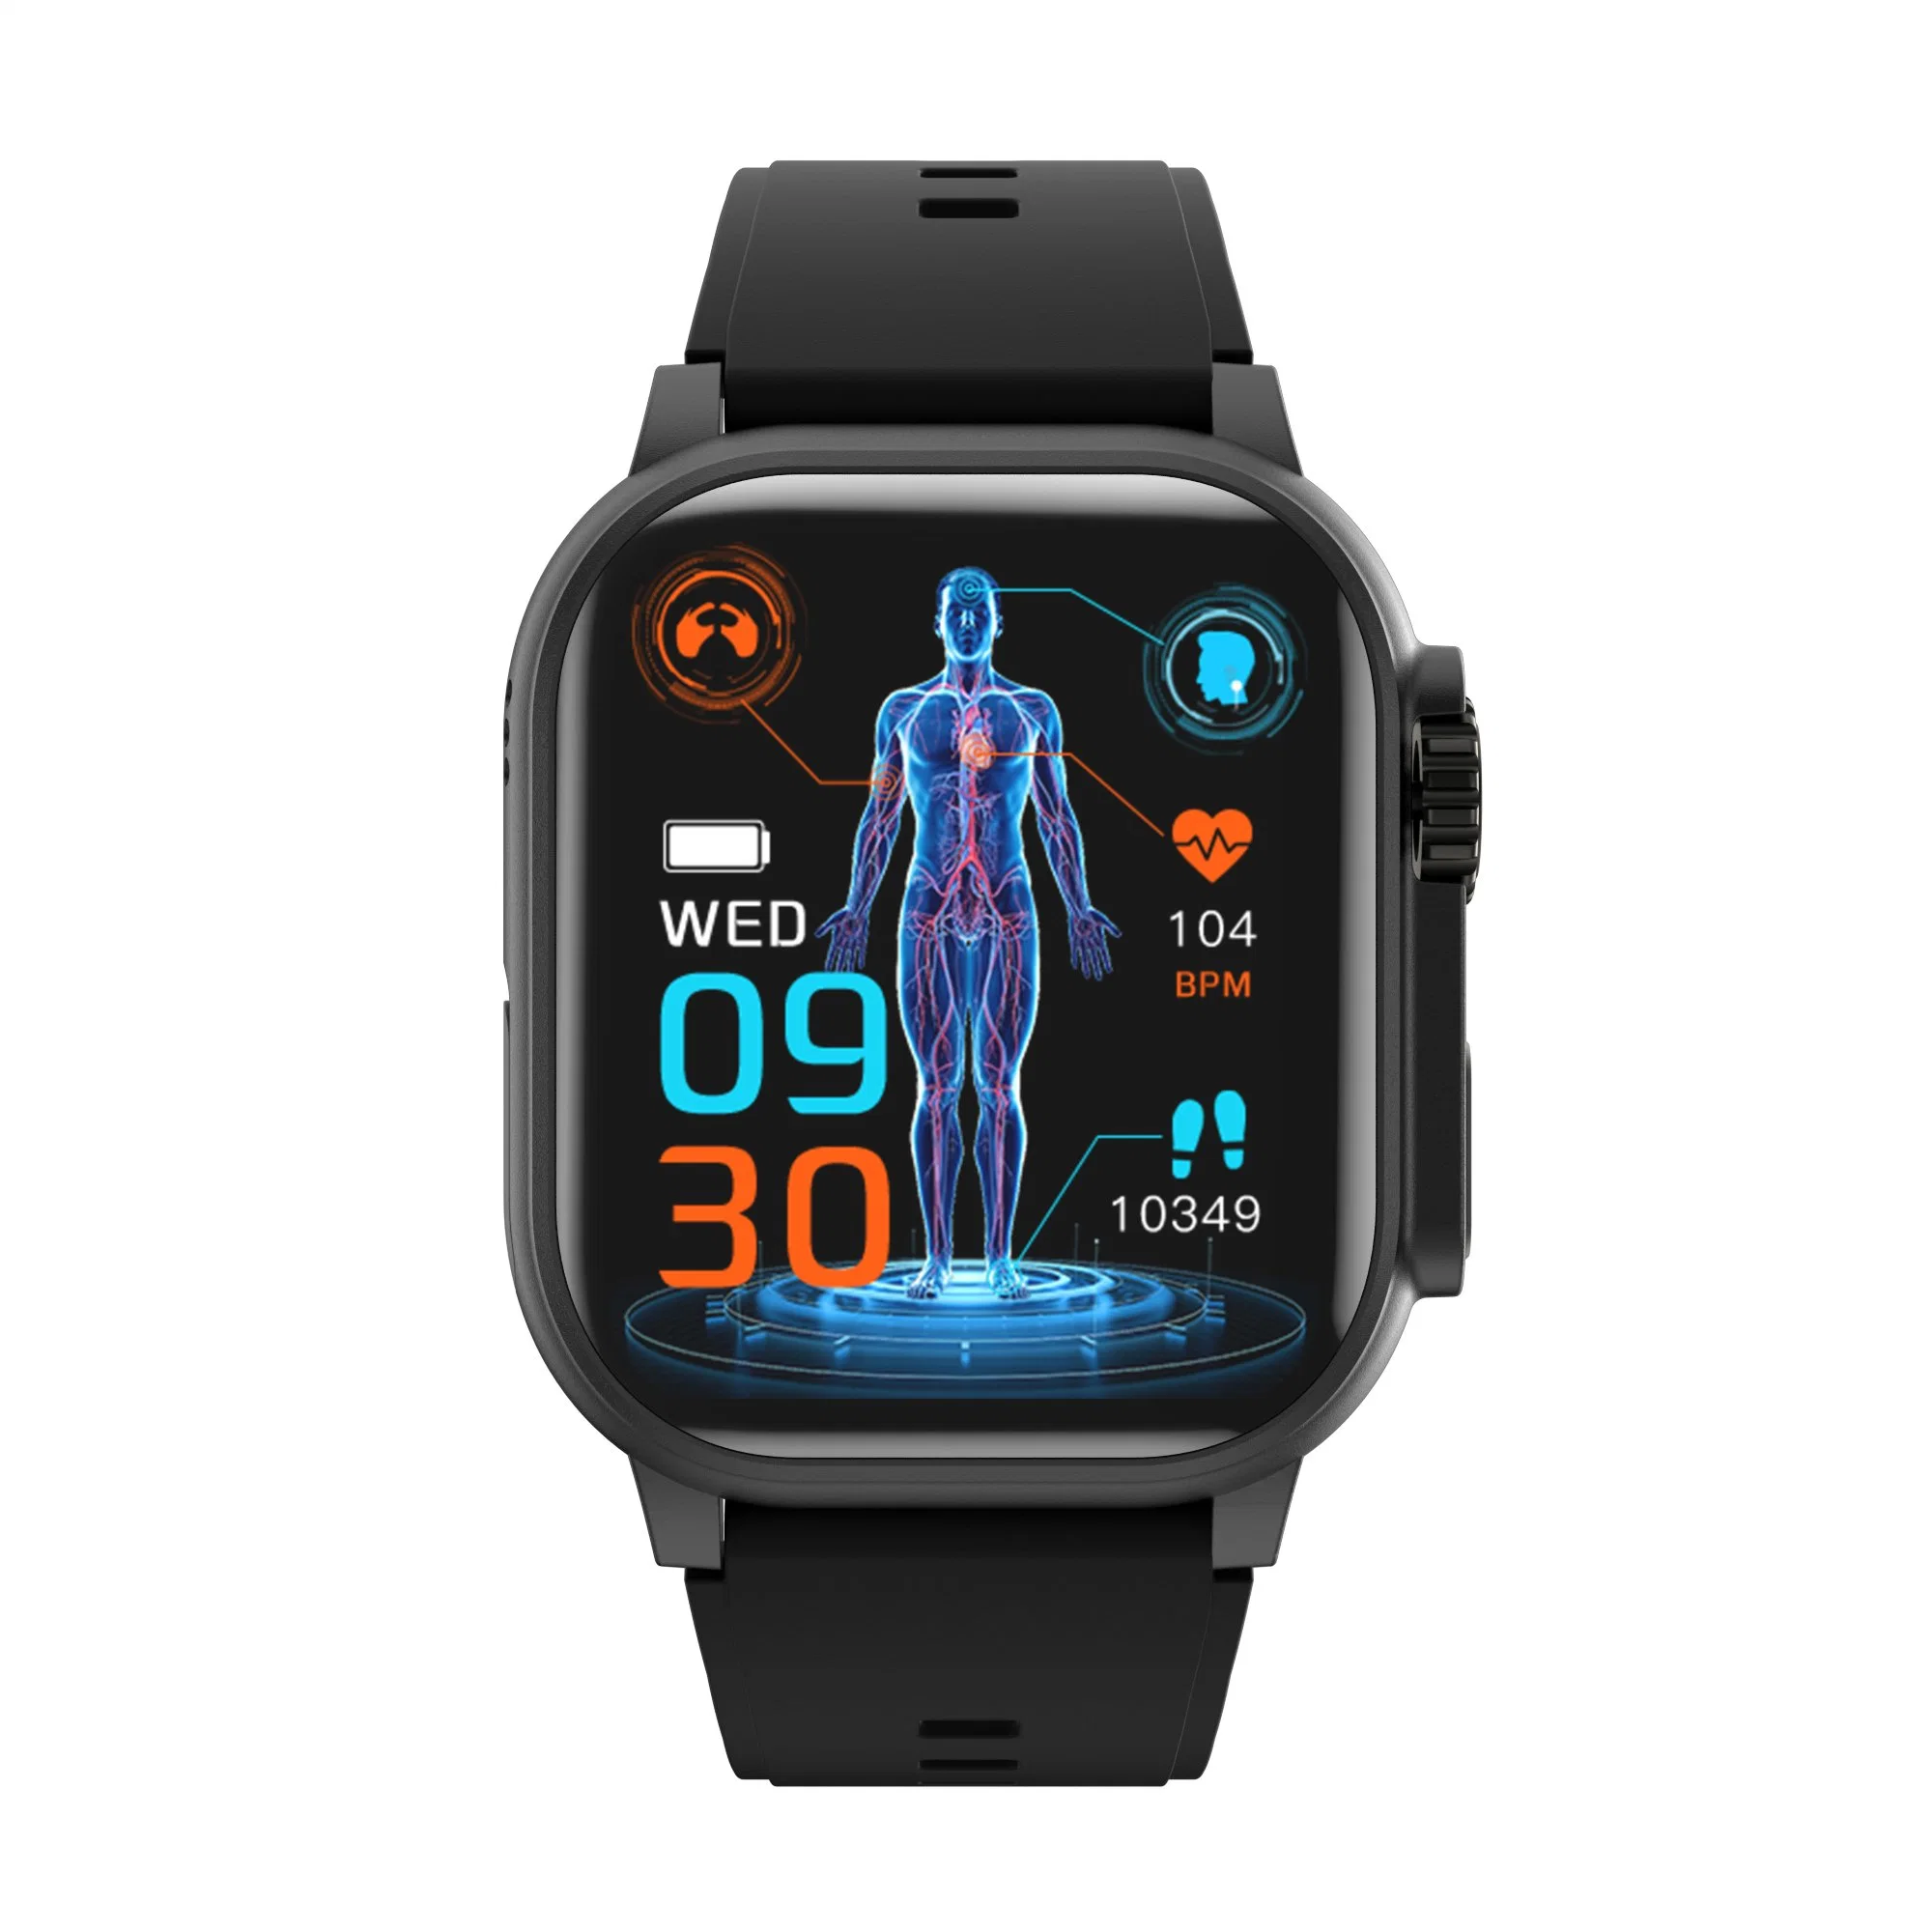 Auflösung Smartwatch Fitness Armband Uhr Frauen Herzfrequenzmesser Männer Smart Watch Reloj F9 240*296 mit BT Call